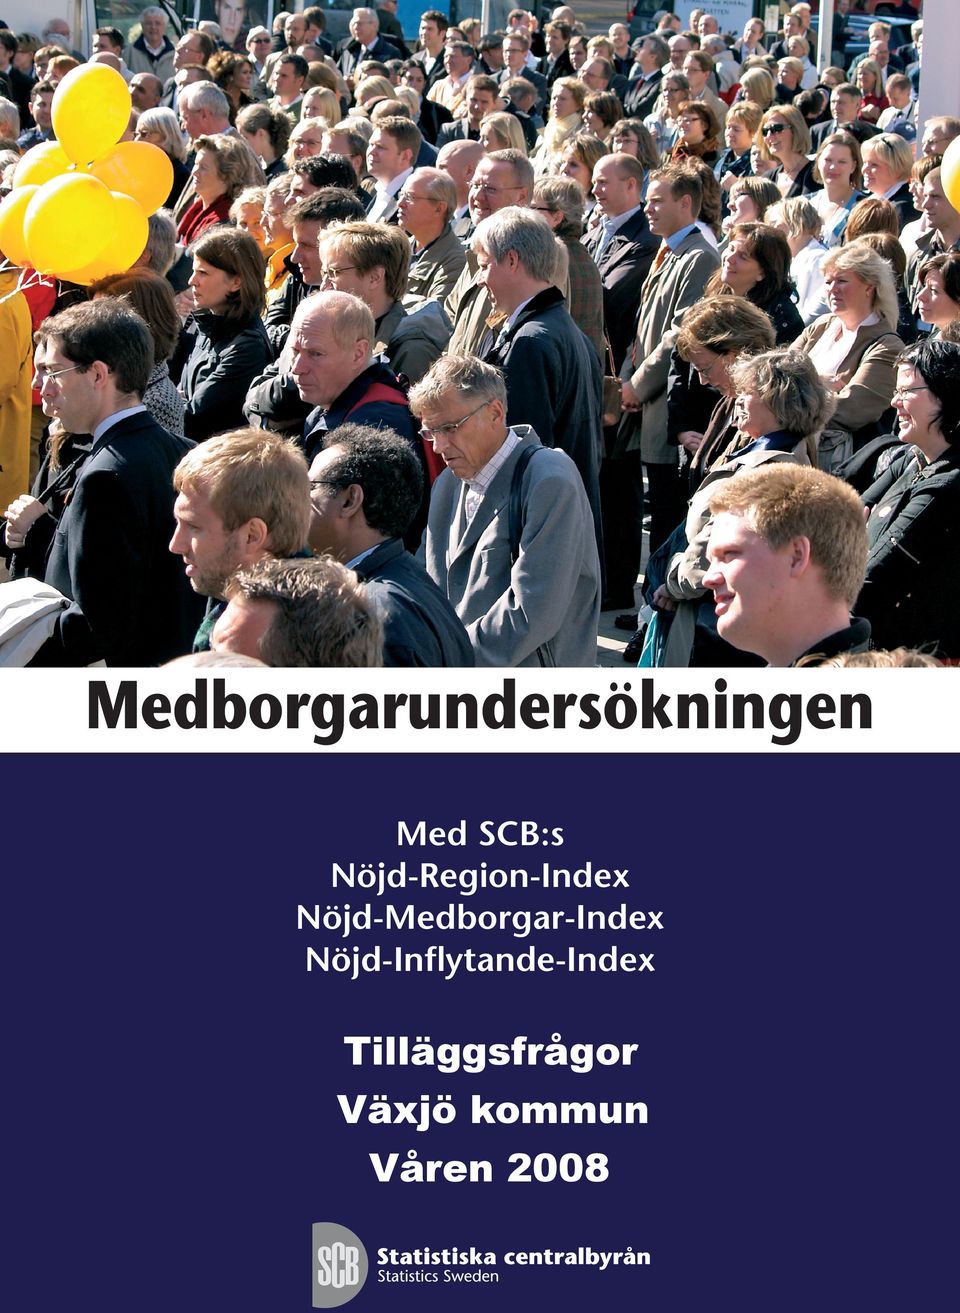 Nöjd-Medborgar-Index